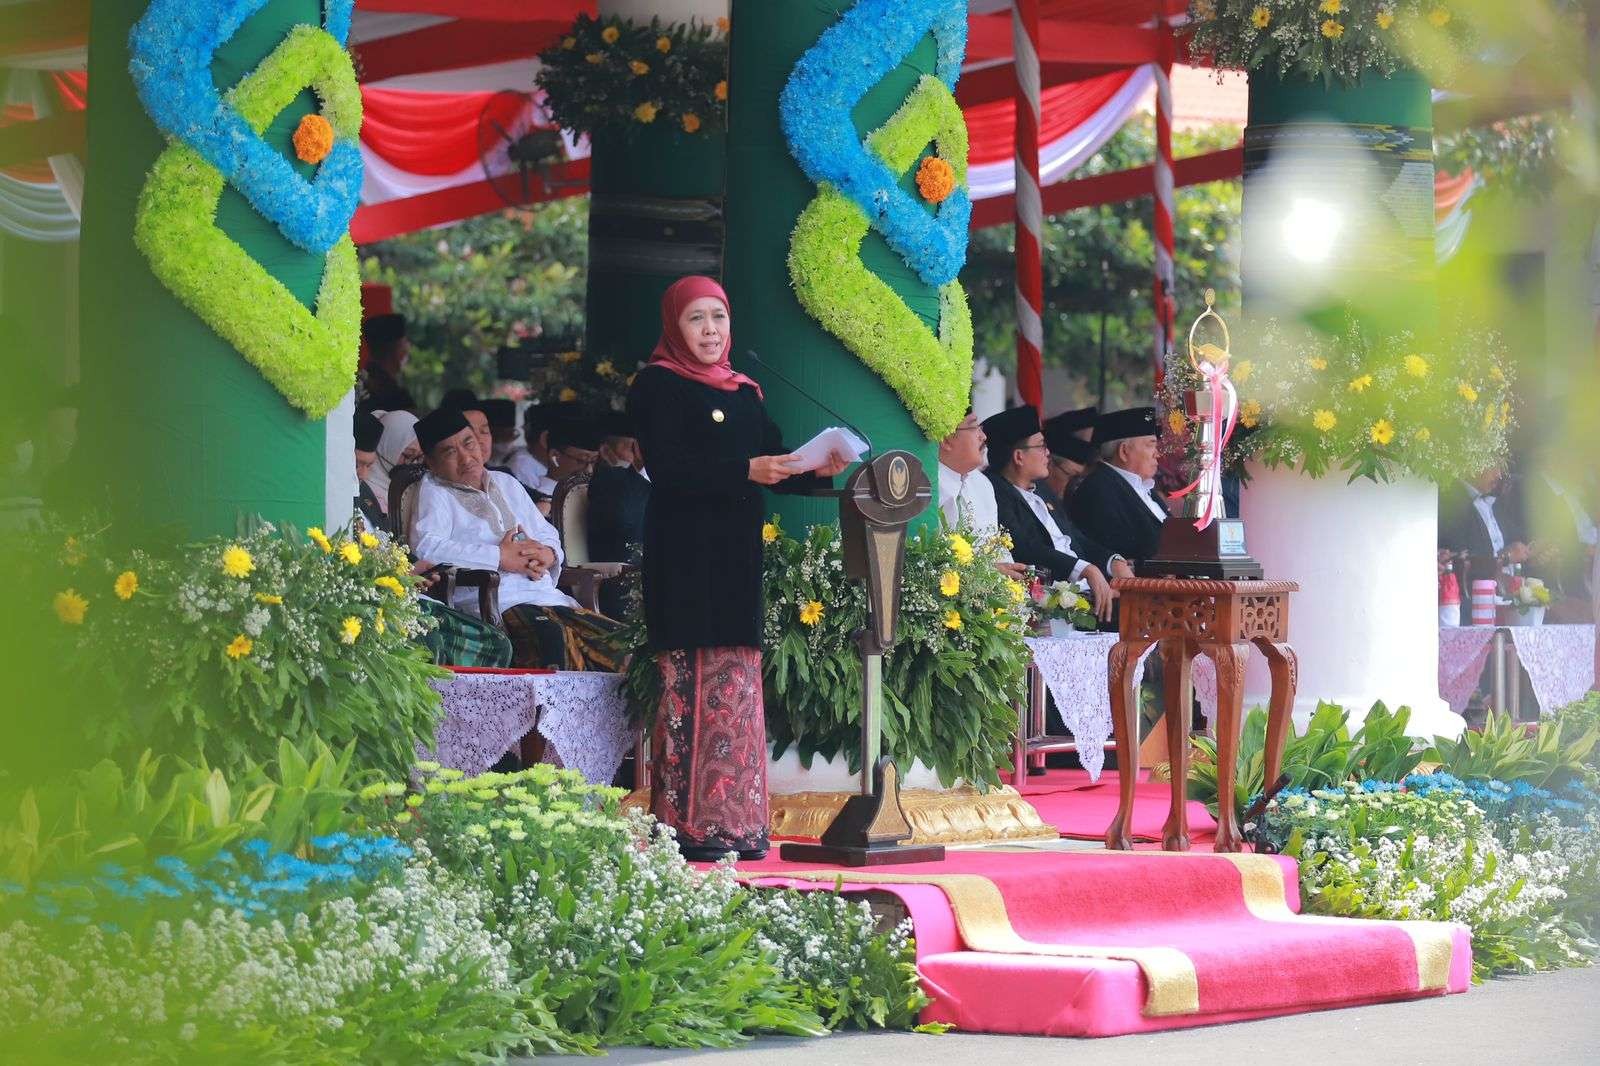 Gubernur Jatim, Khofifah Indar Parawansa dalam upacara Peringatan Hari Santri 2022 di Gedung Negara Grahadi, Surabaya, Sabtu 22 Oktober 2022. (Foto: Humas Prov Jatim)